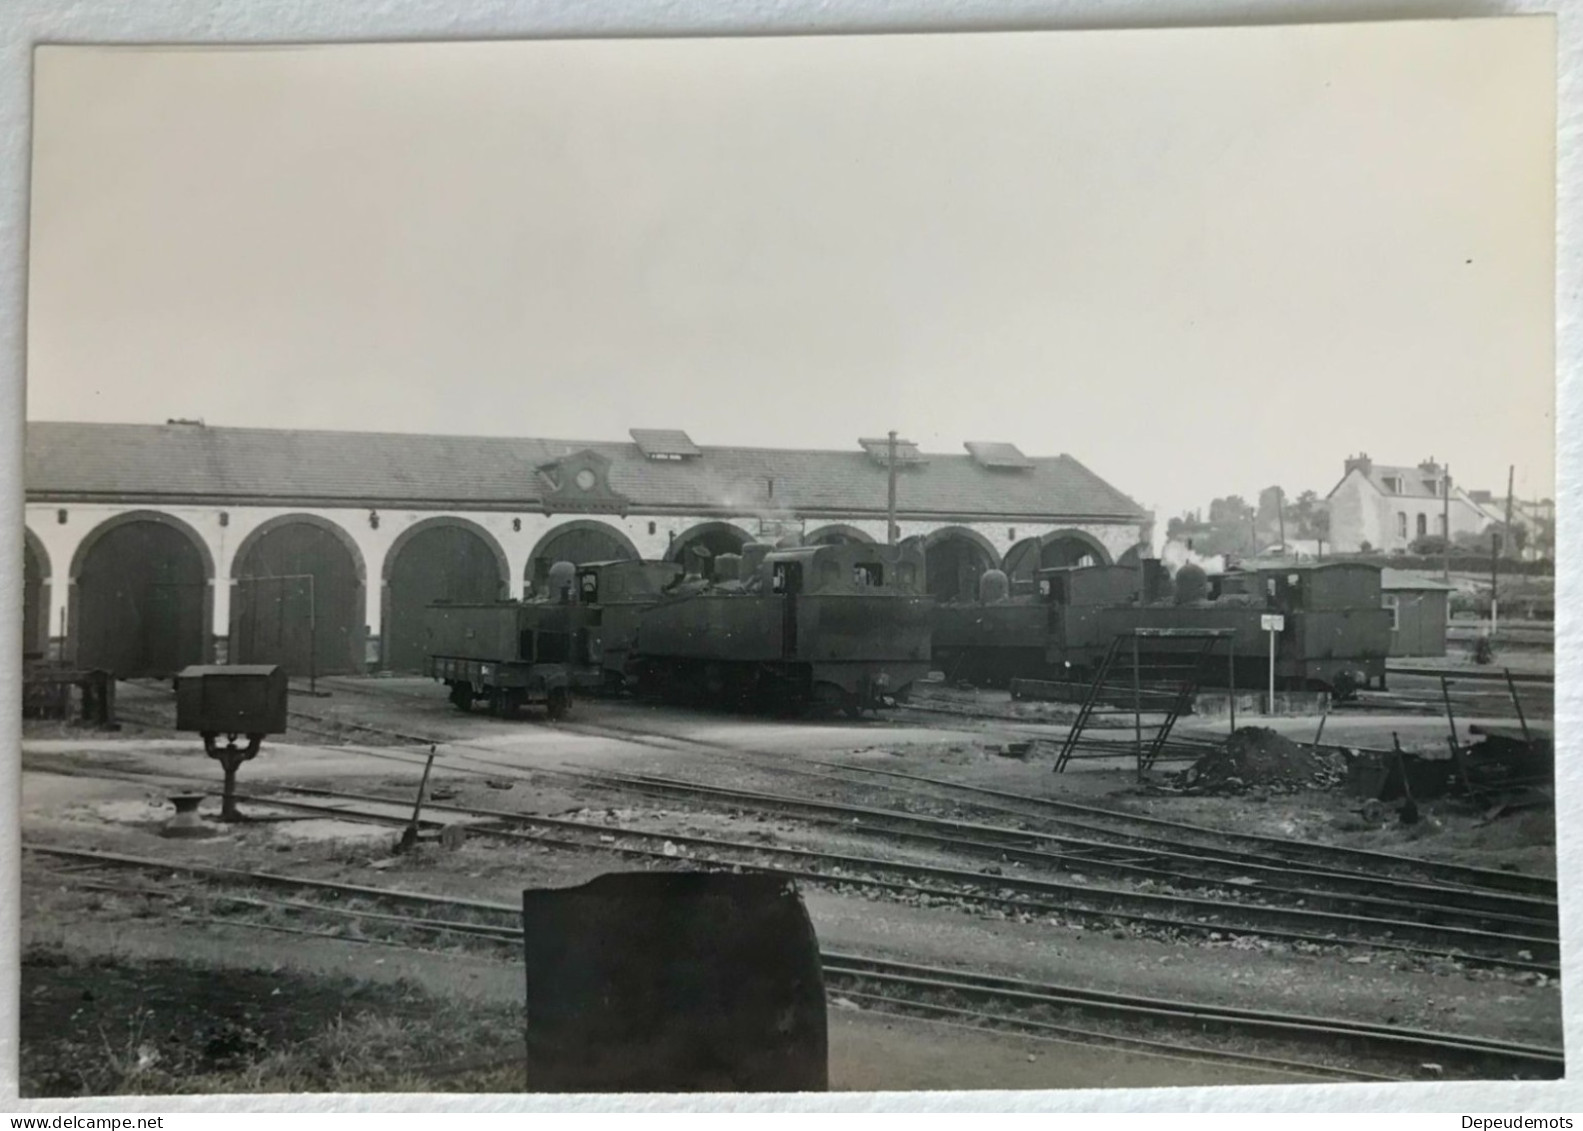 Photo Ancienne - Snapshot - Train - Locomotive - CARHAIX - Bretagne - Ferroviaire - Chemin De Fer - Gare Dépôt - RB - Trains